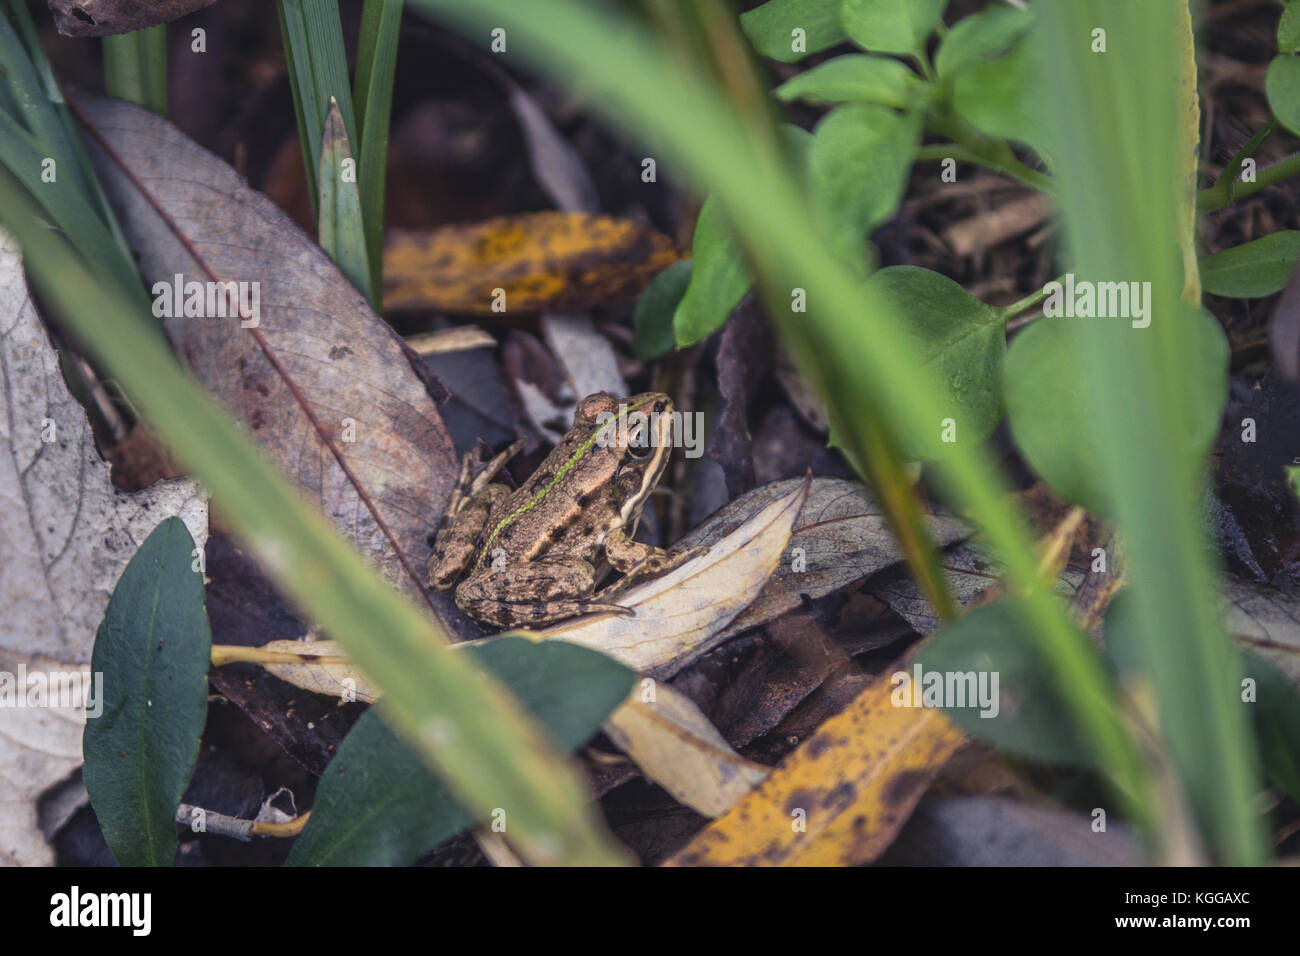 Rana comestible (pelophylax kl. Esculentus ex rana esculenta), sentada en el suelo entre hojas secas el día de otoño en la Isla de la Gran Guerra, Belgrado, Serbia Foto de stock